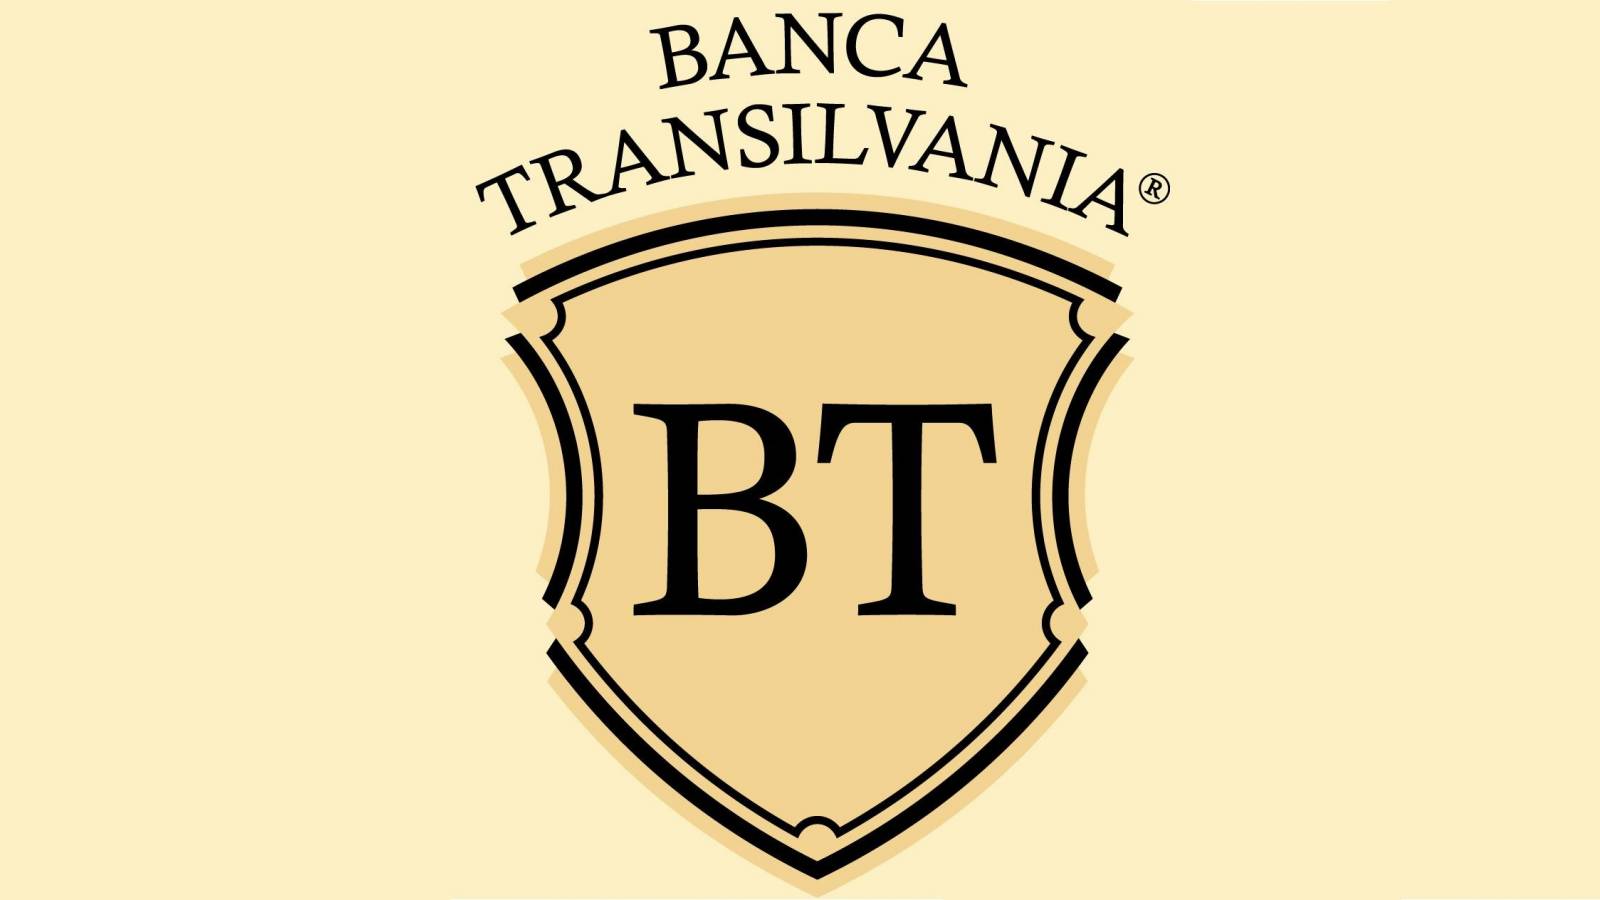 BANK Transilvania värinät